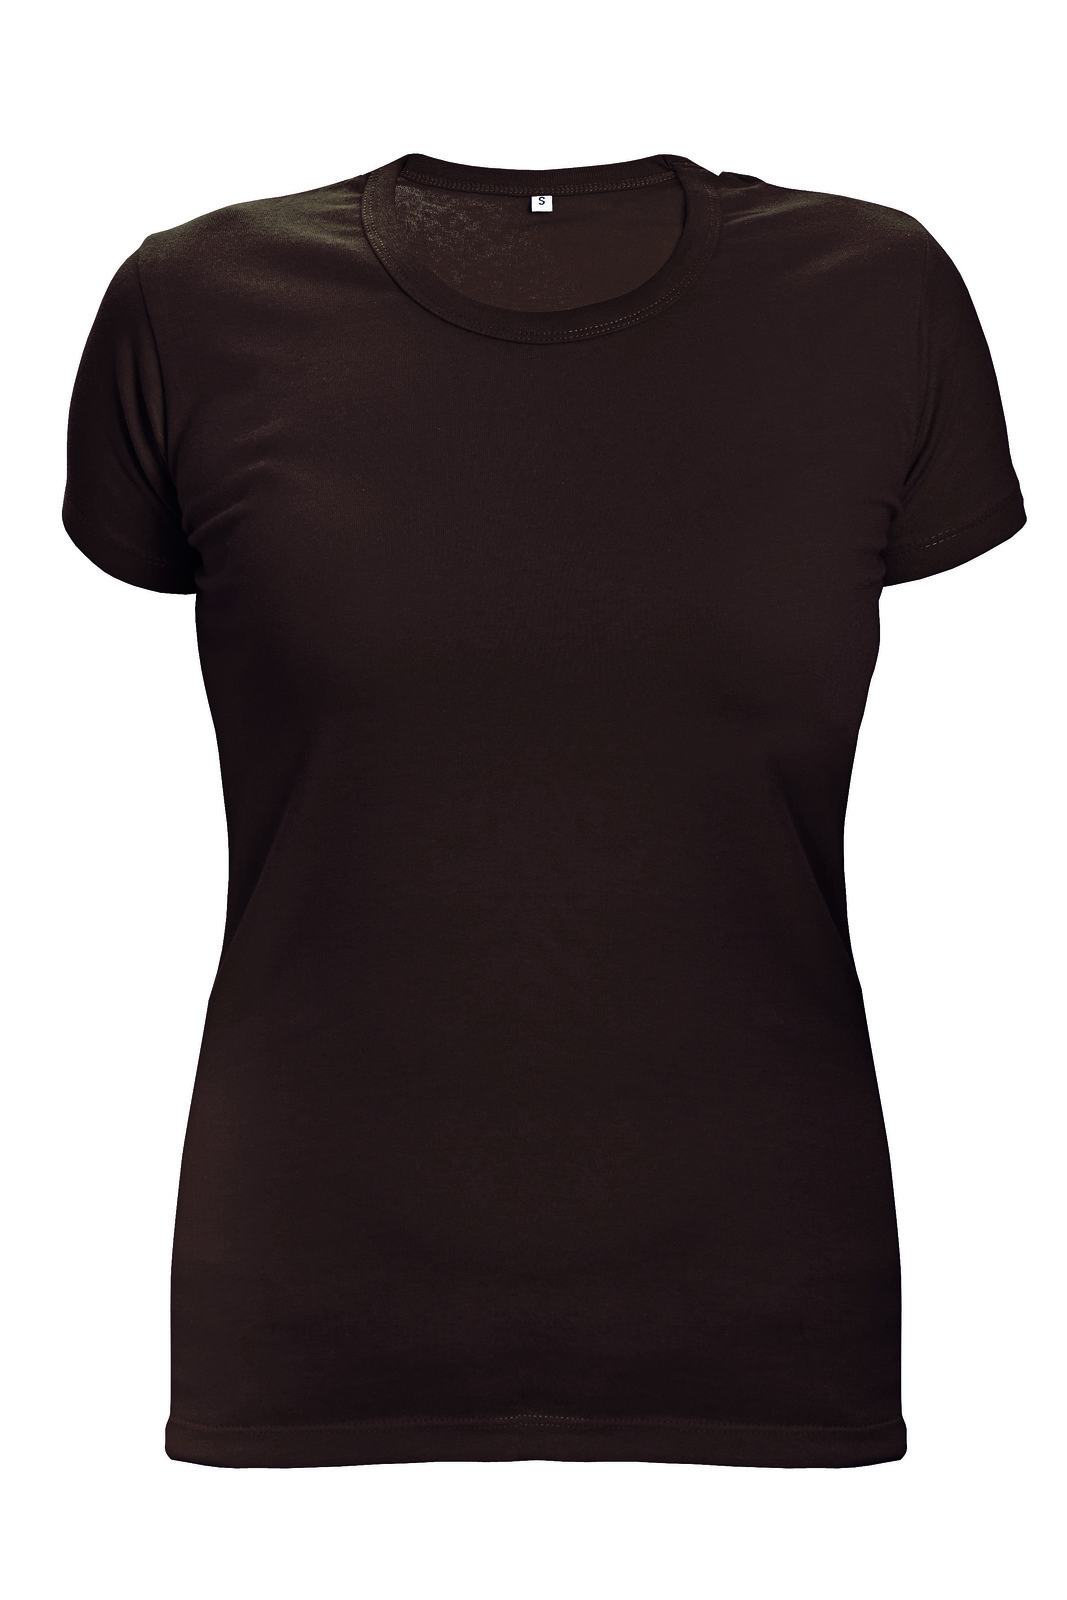 Dámske tričko s krátkym rukávom Surma Lady - veľkosť: M, farba: tmavo hnedá